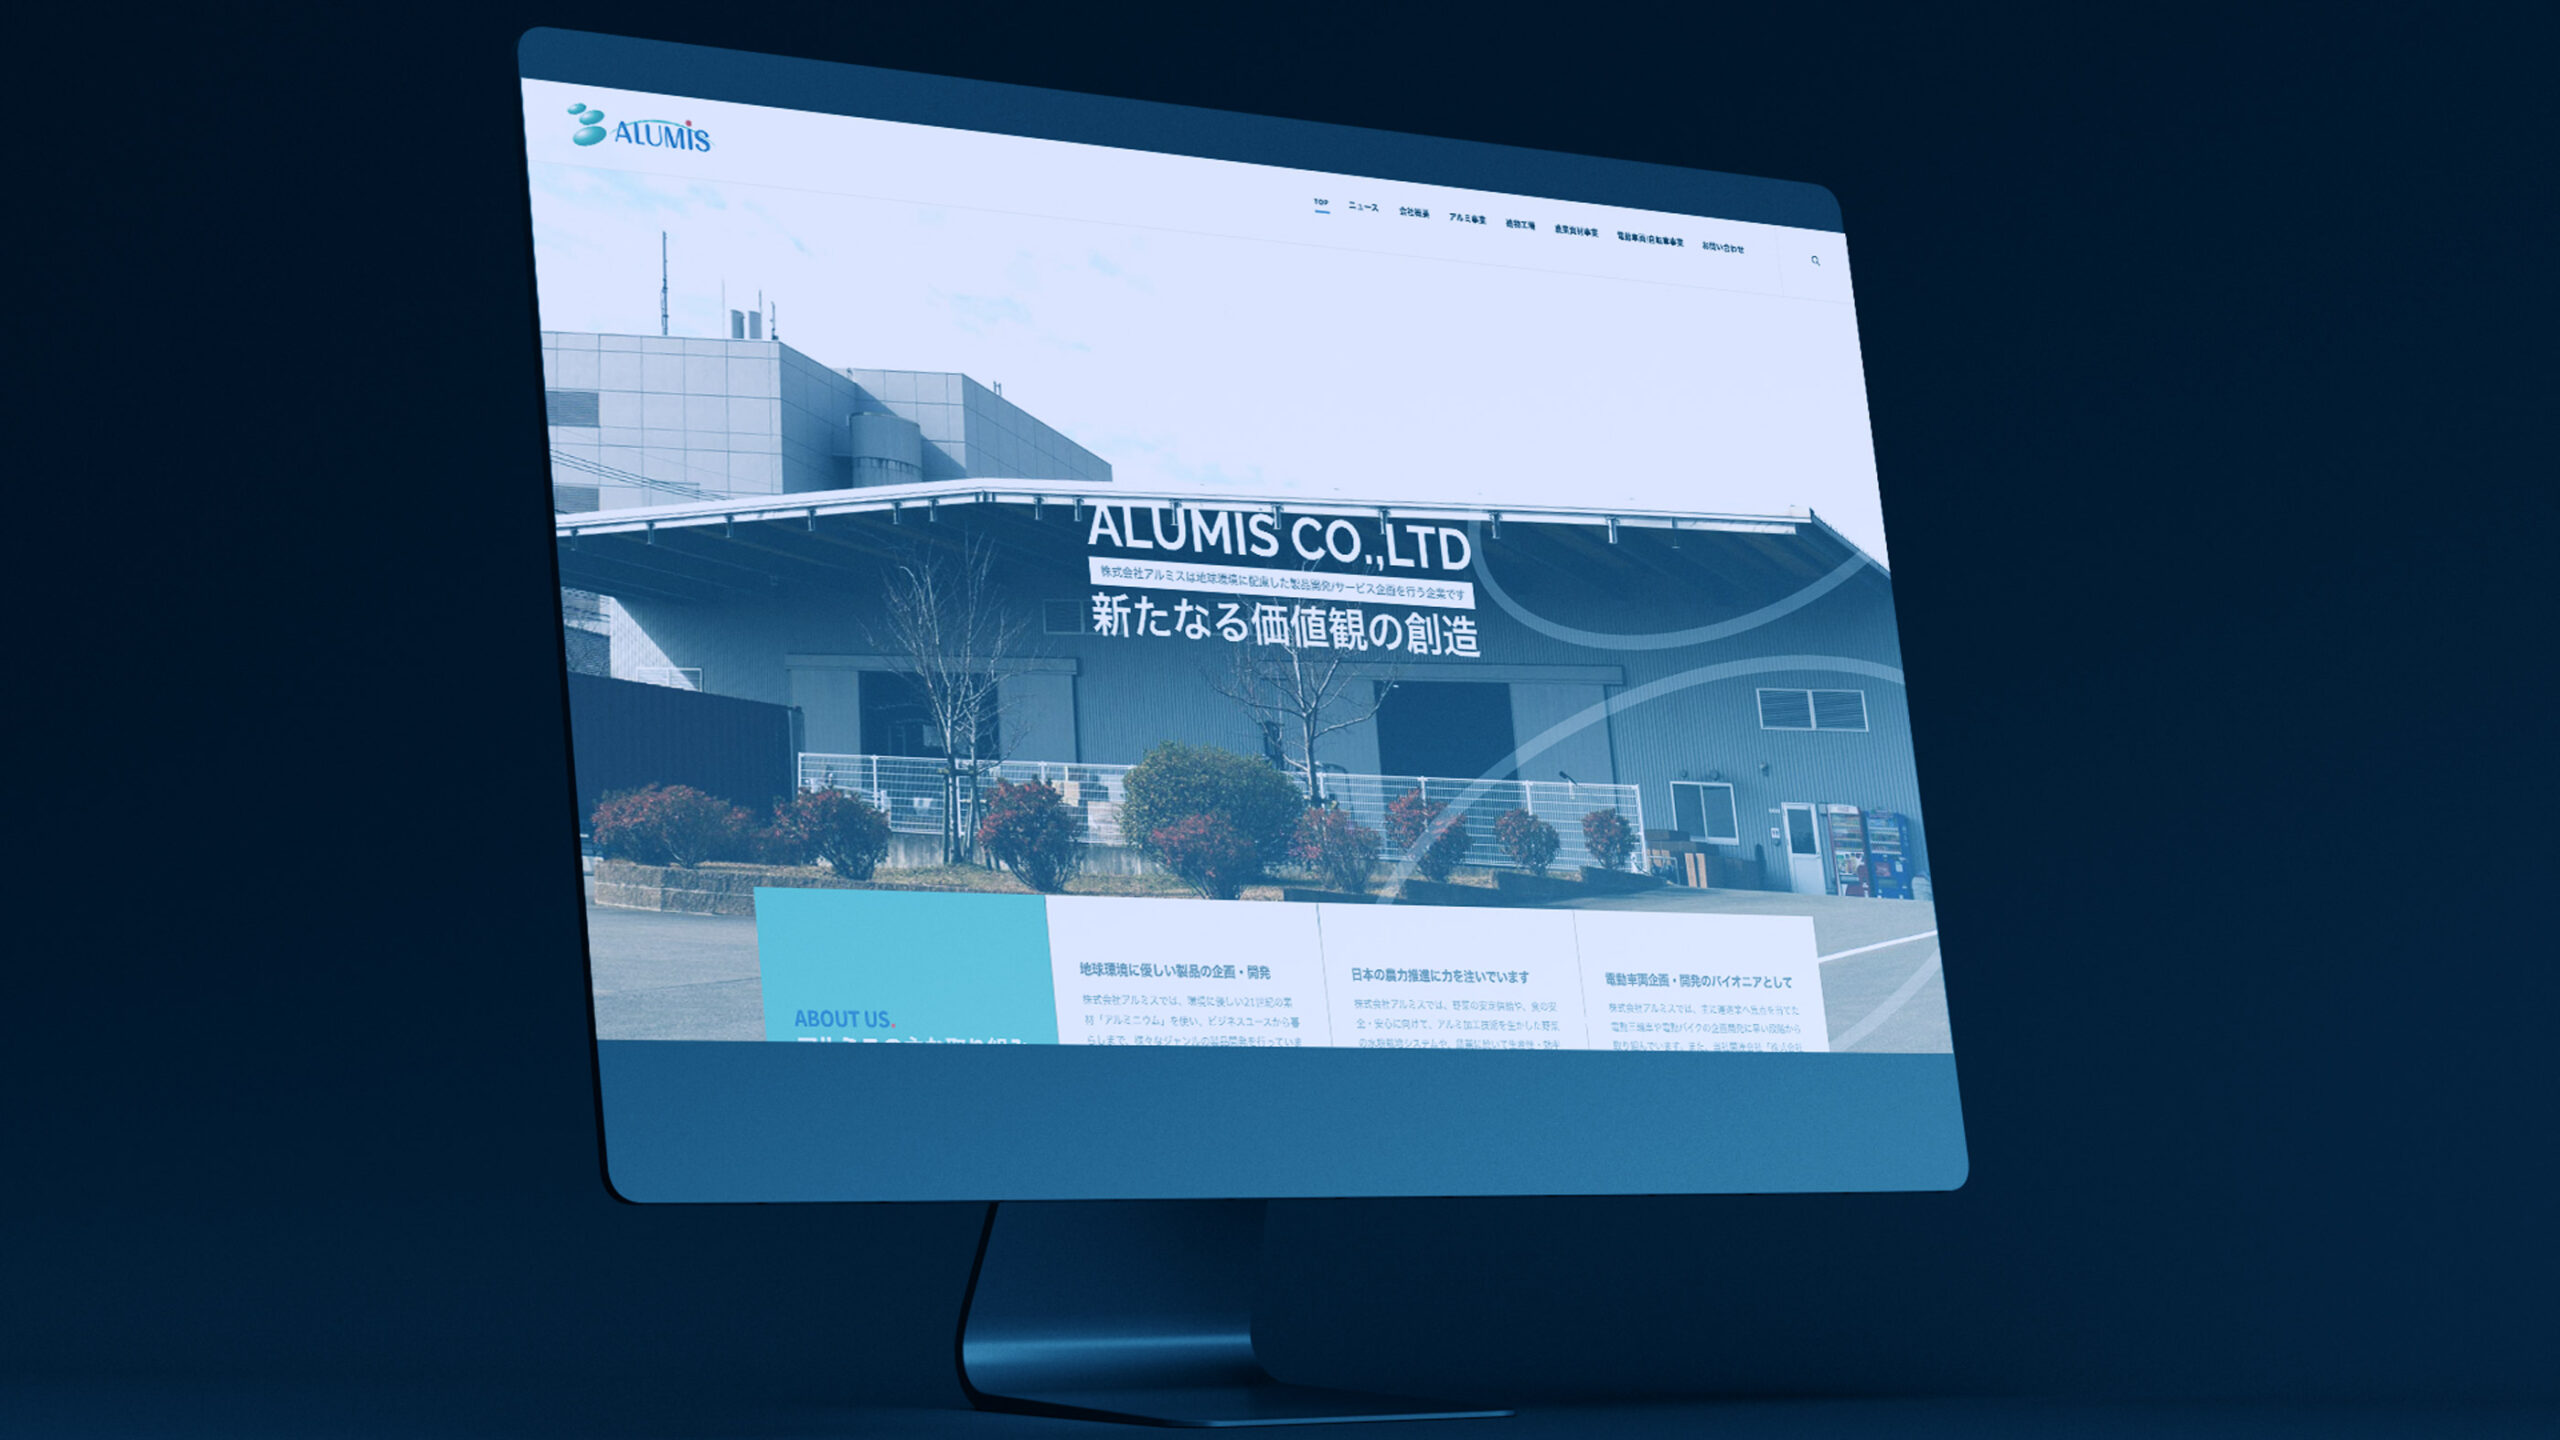 株式会社アルミス佐賀本社のトップページウェブデザインがデスクトップパソコンに表示されているスティルライフグラフィック写真